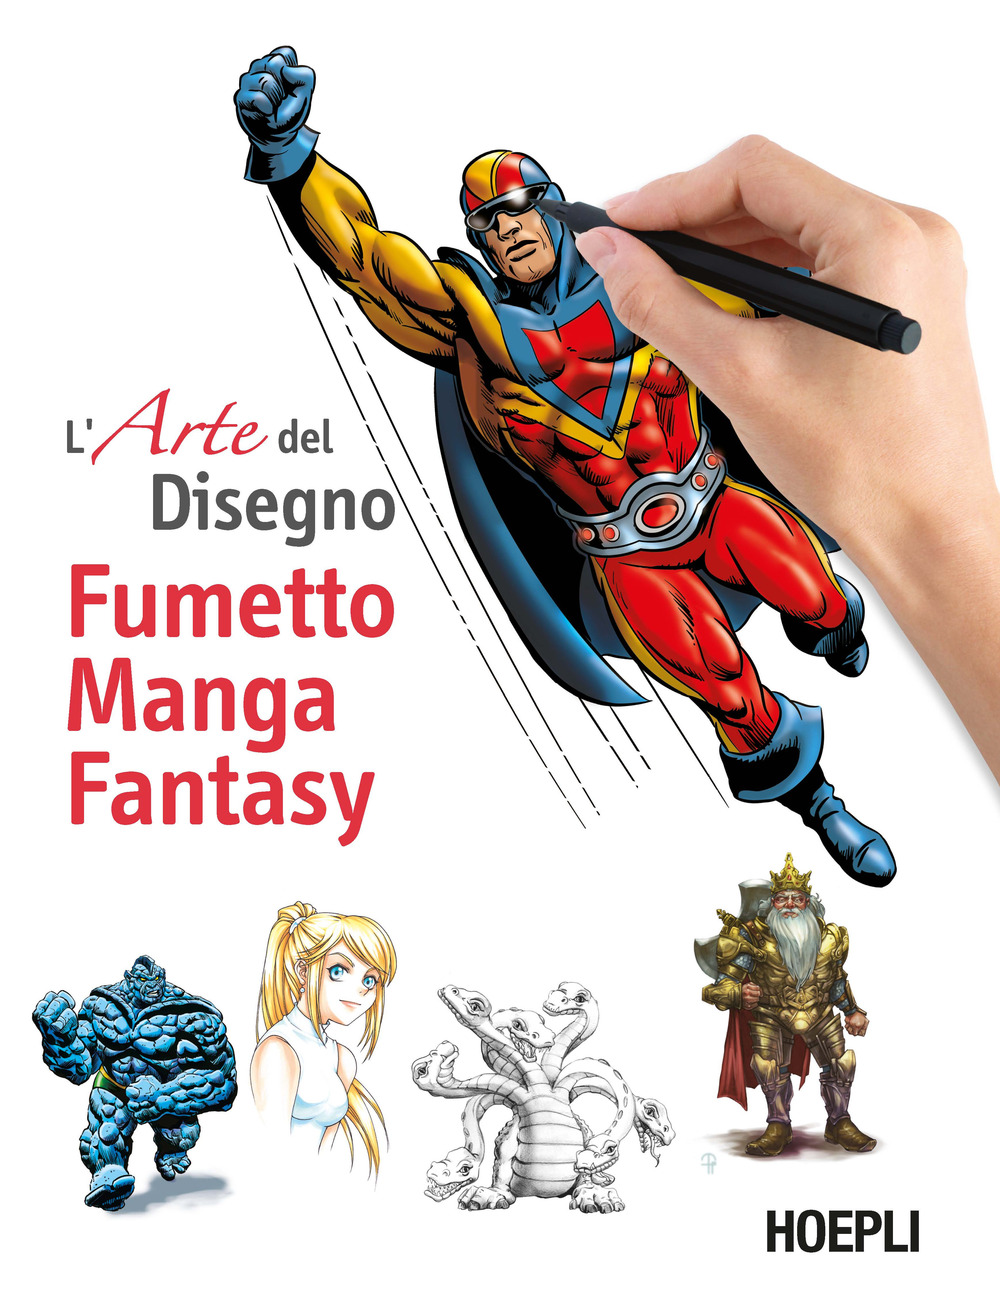 Fumetto, manga, fantasy. L'arte del disegno